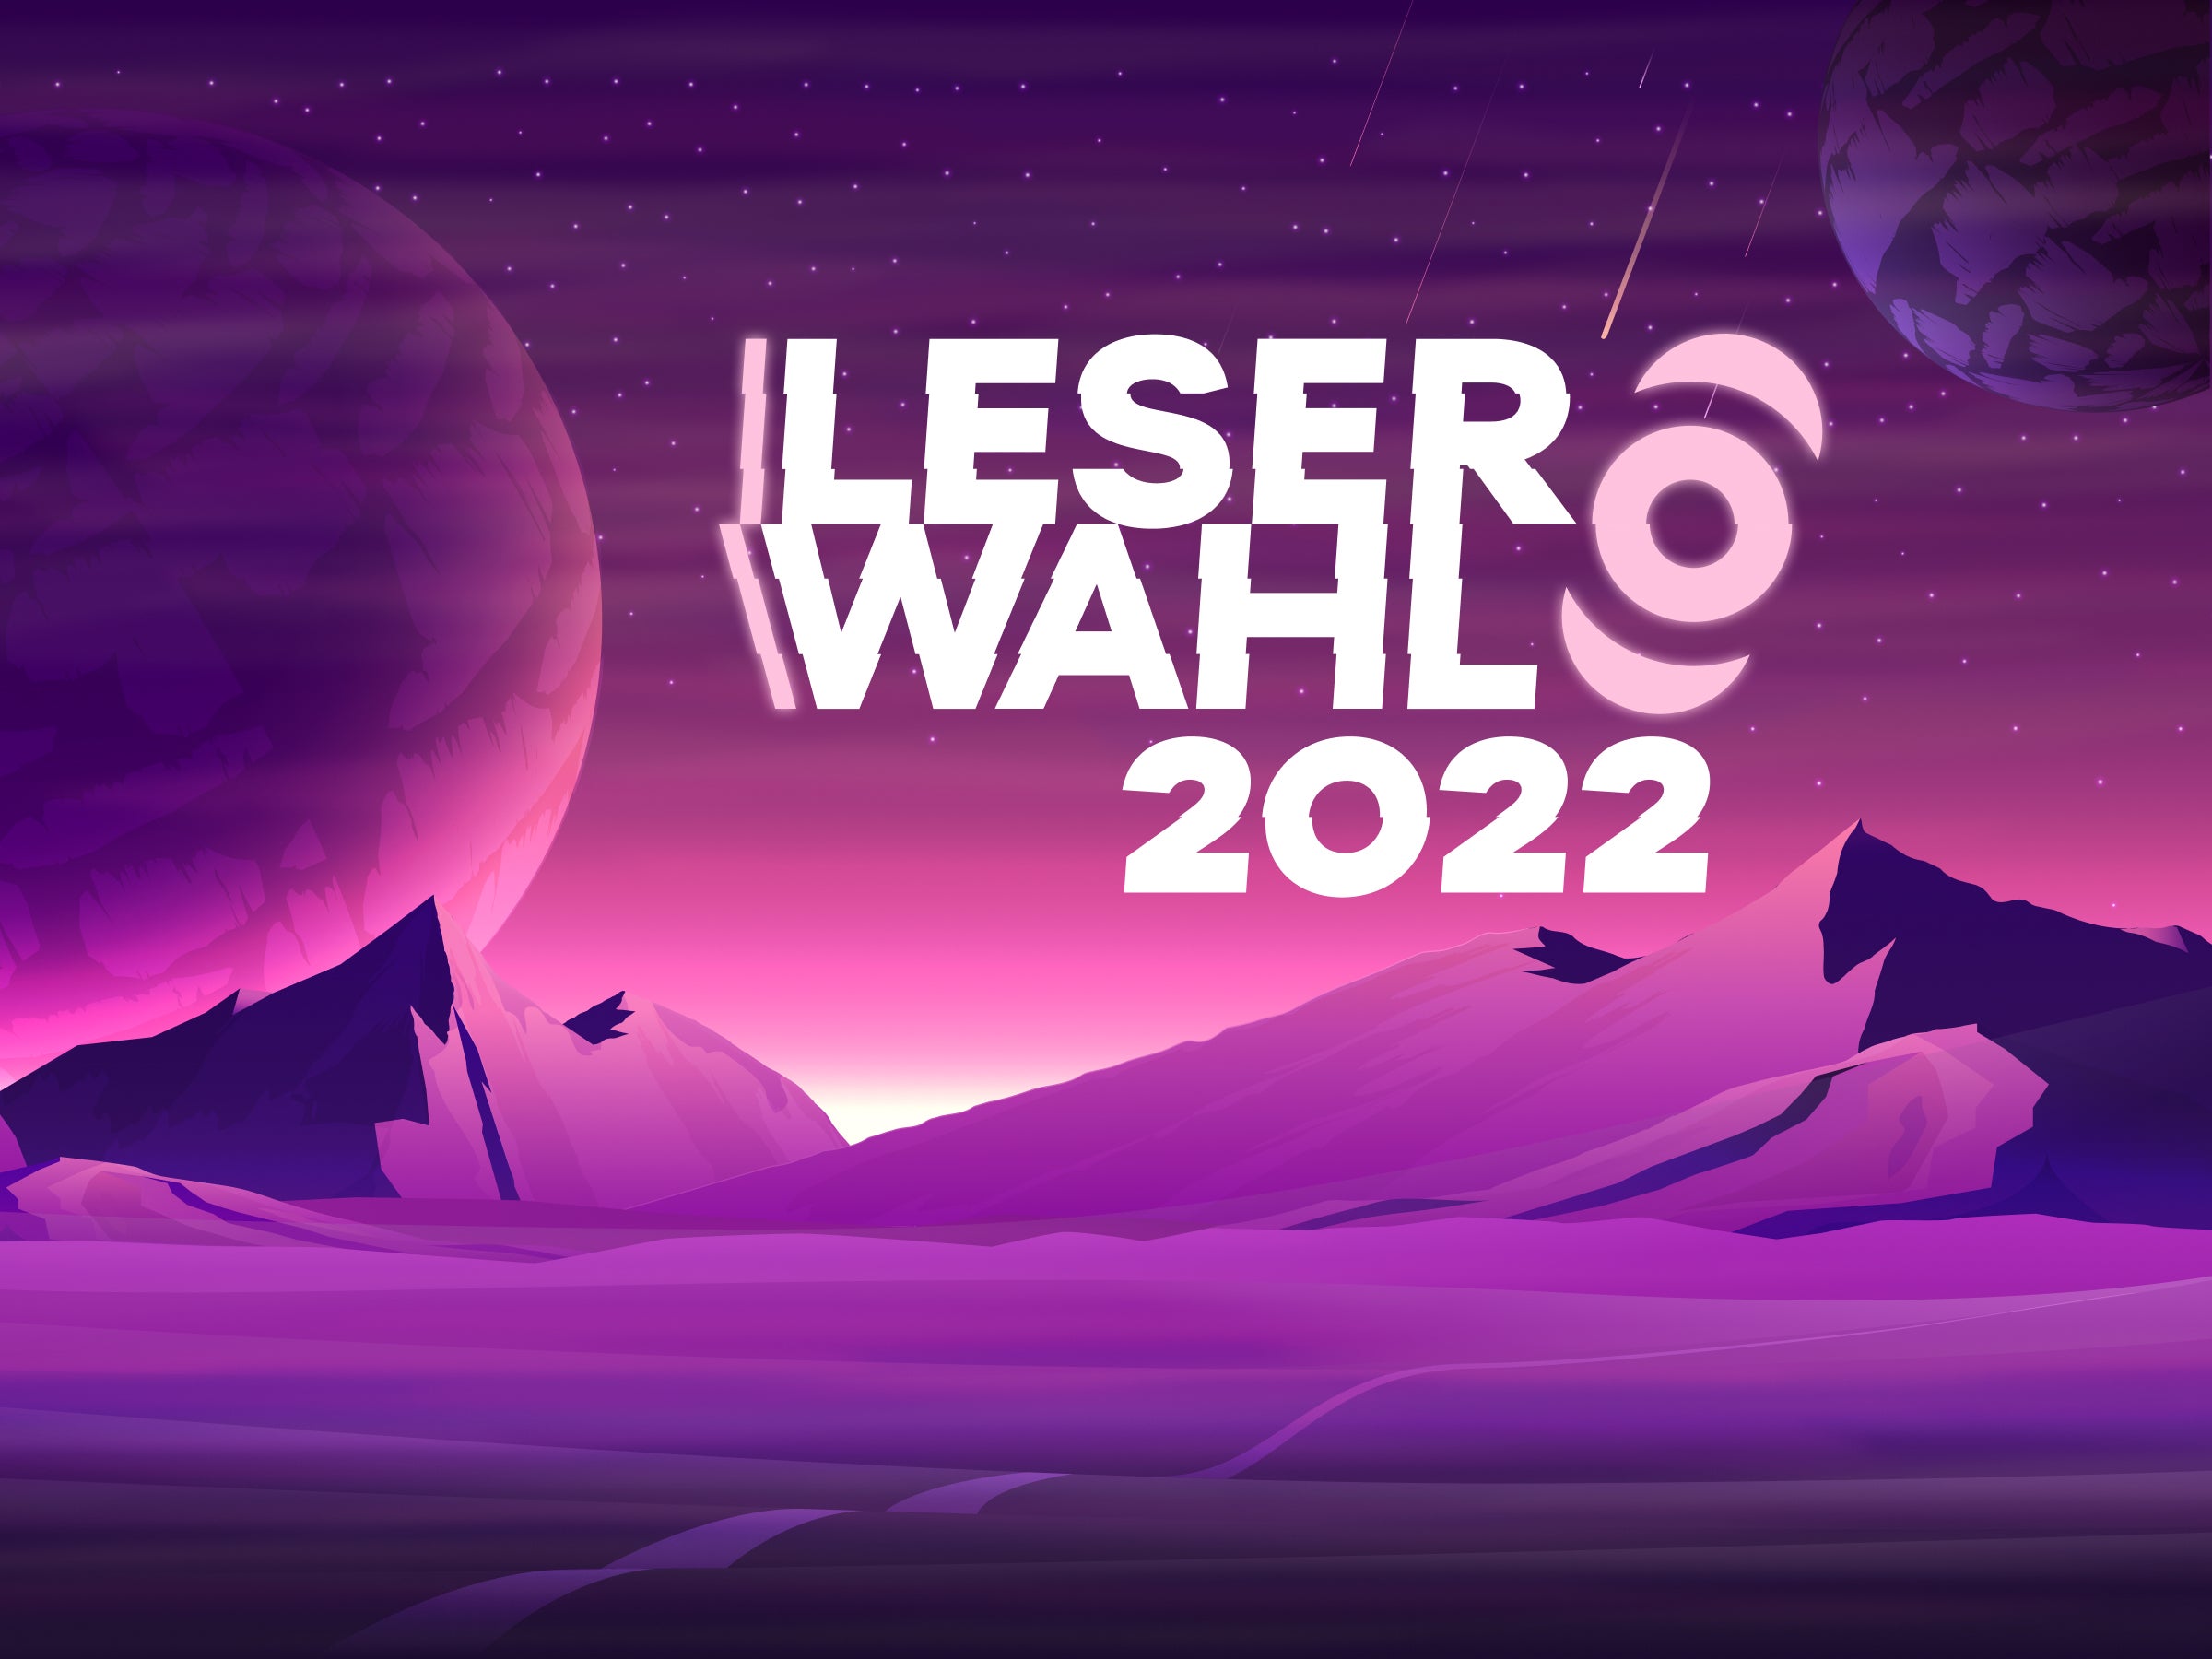 #Leserwahl 2022: Unser großes Leser-Event startet mit Lichtgeschwindigkeit in den Orbit